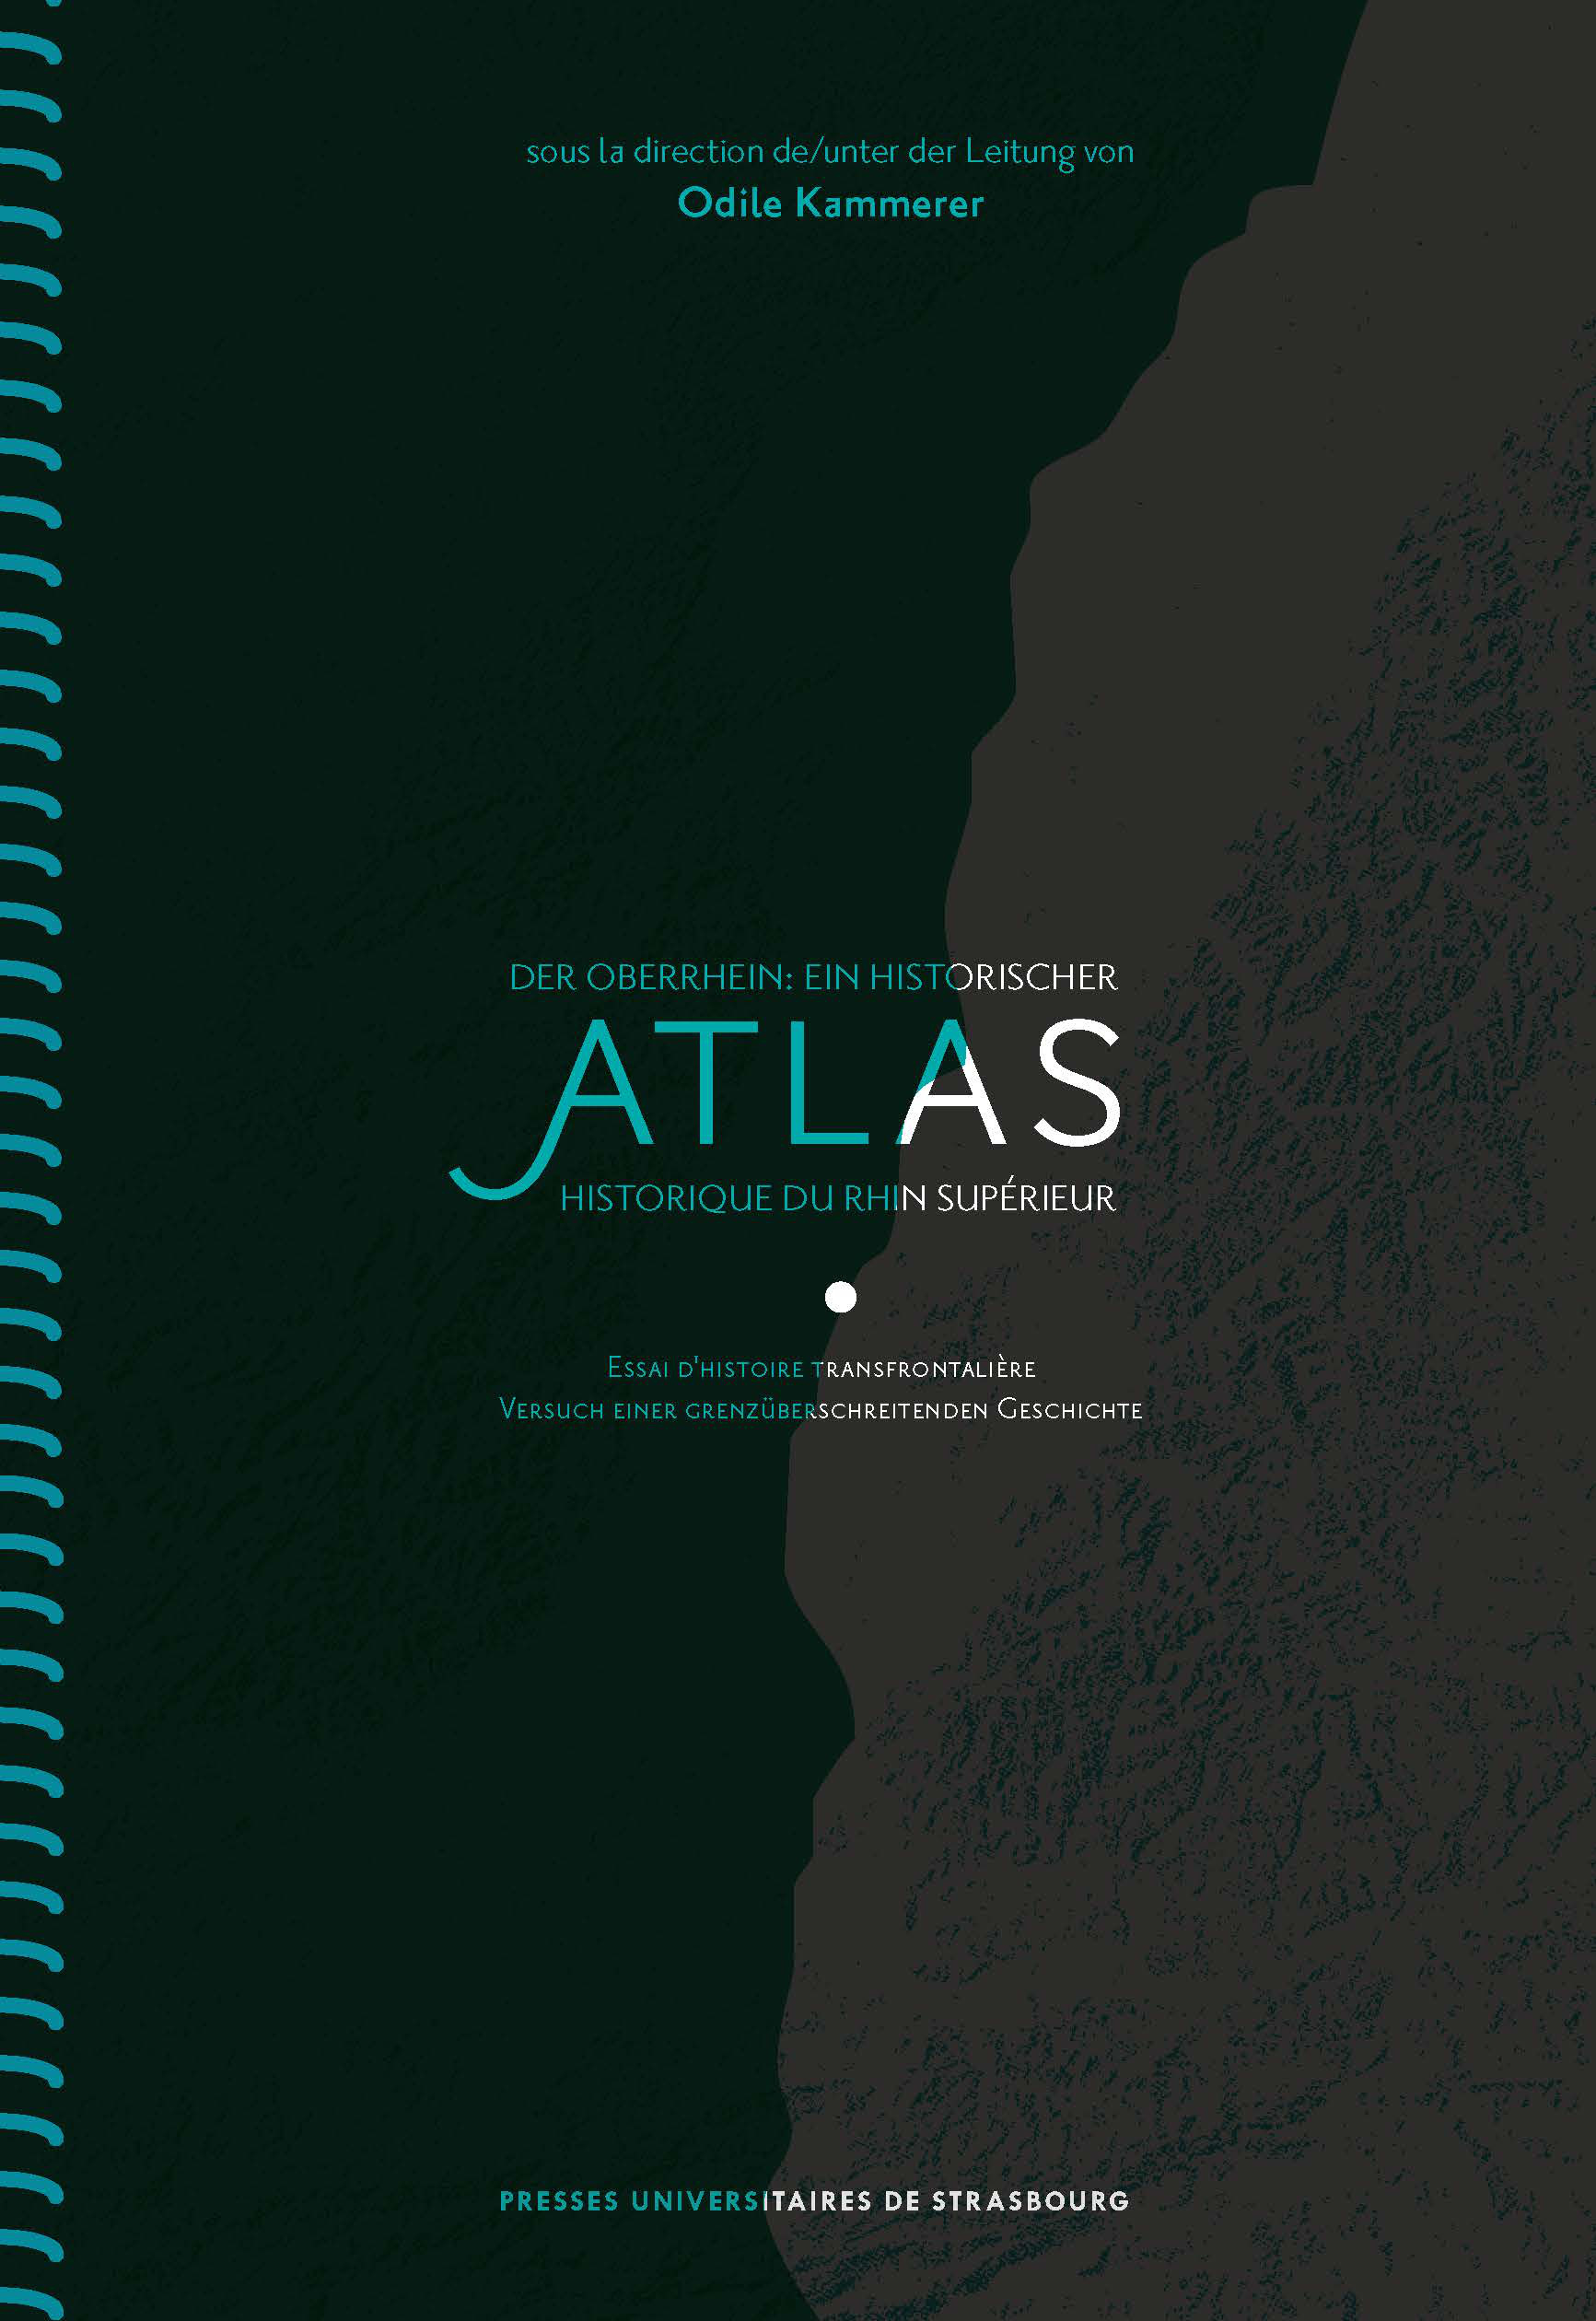 Atlas historique du Rhin supérieur – Der Oberrhein: ein historischer Atlas